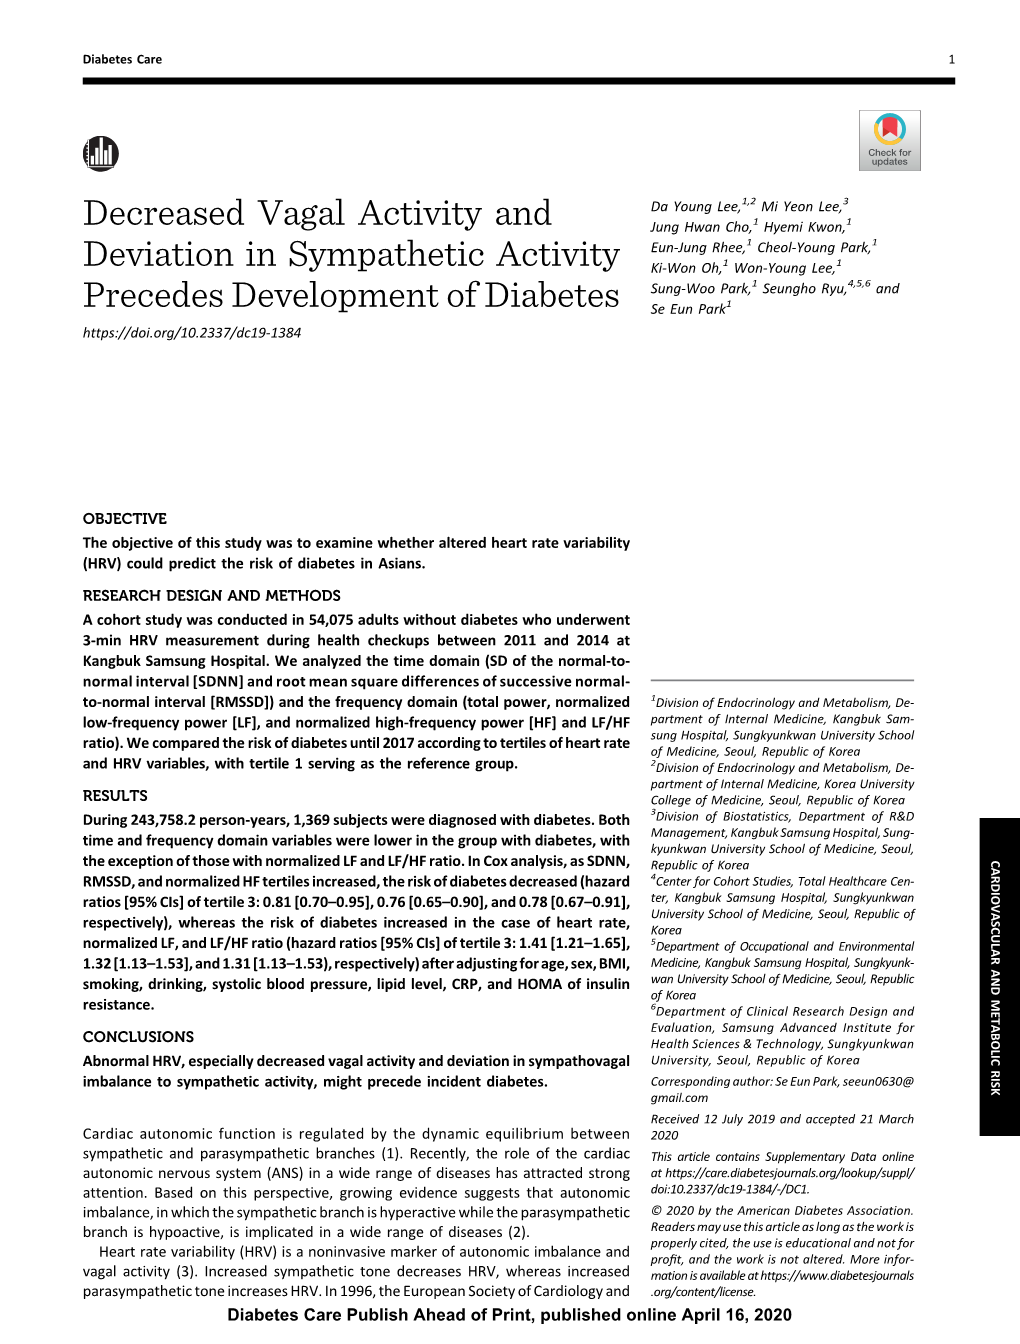 Decreased Vagal Activity and Deviation in Sympathetic Activity